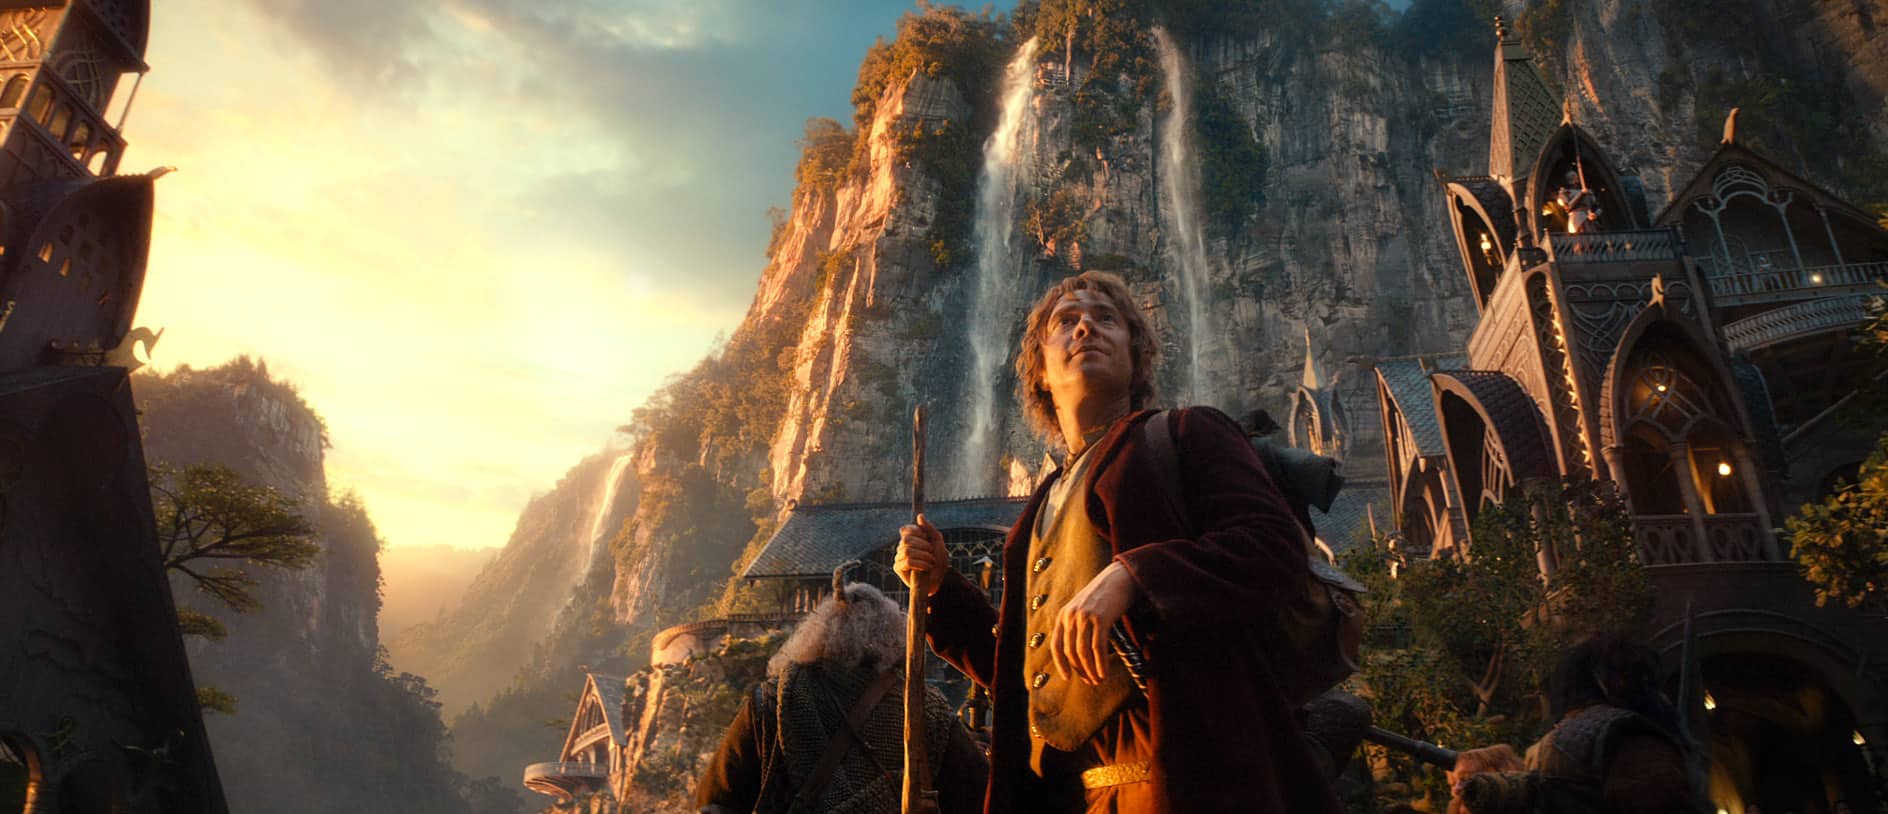 Abb. 2: Screenshot aus Der Hobbit – Eine unerwartete Reise (2012). Verleih: Warner Bros.